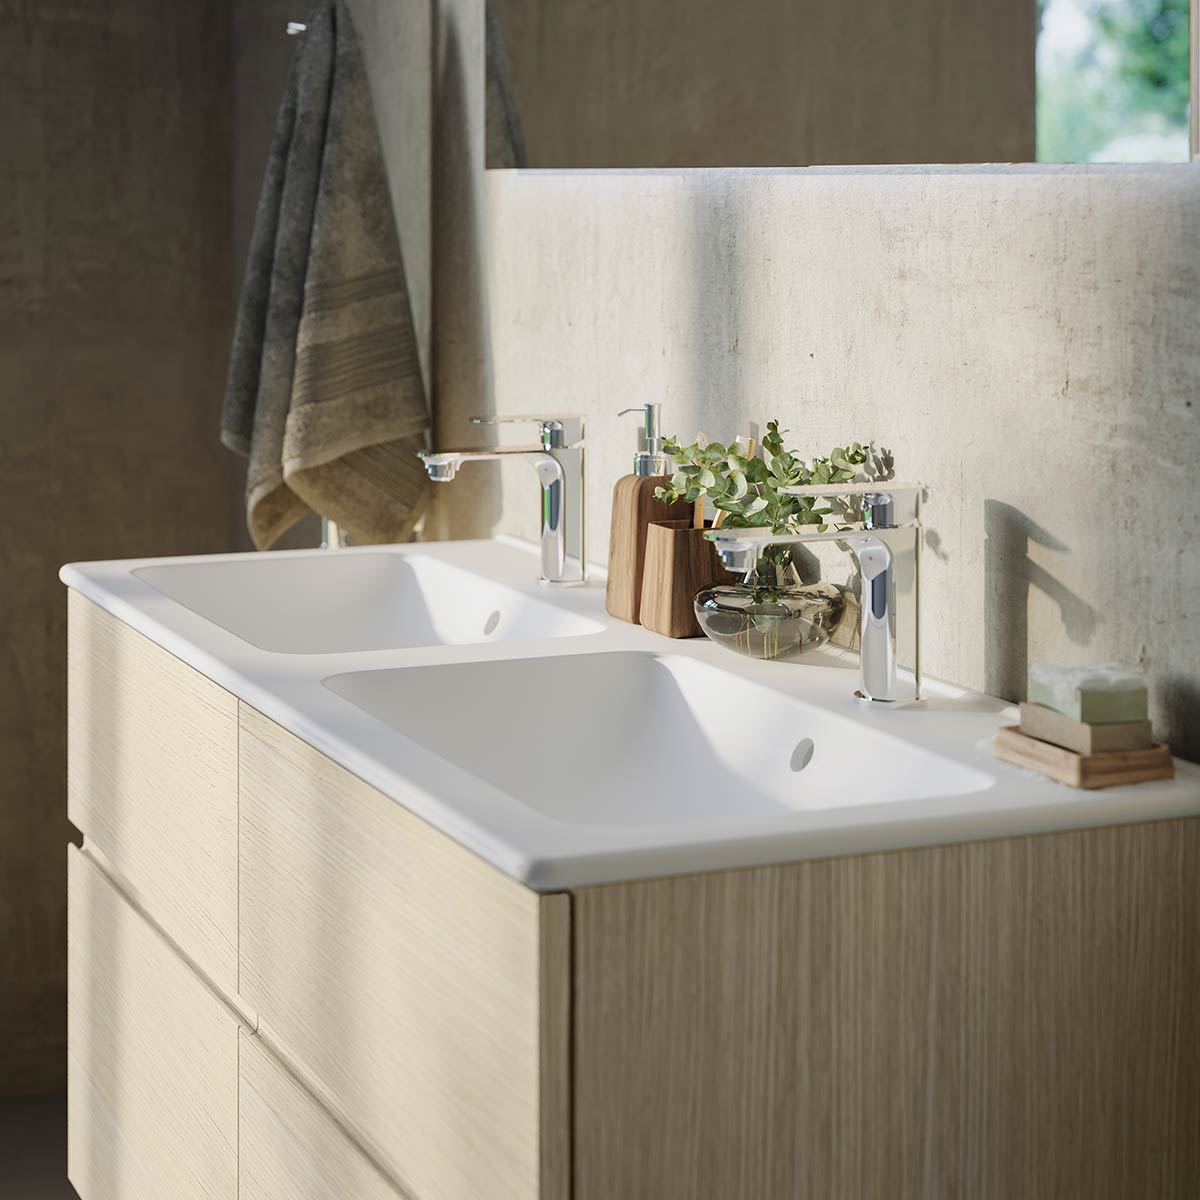 Håndvasken er både kronen på værket samt design og funktion i smuk harmoni.